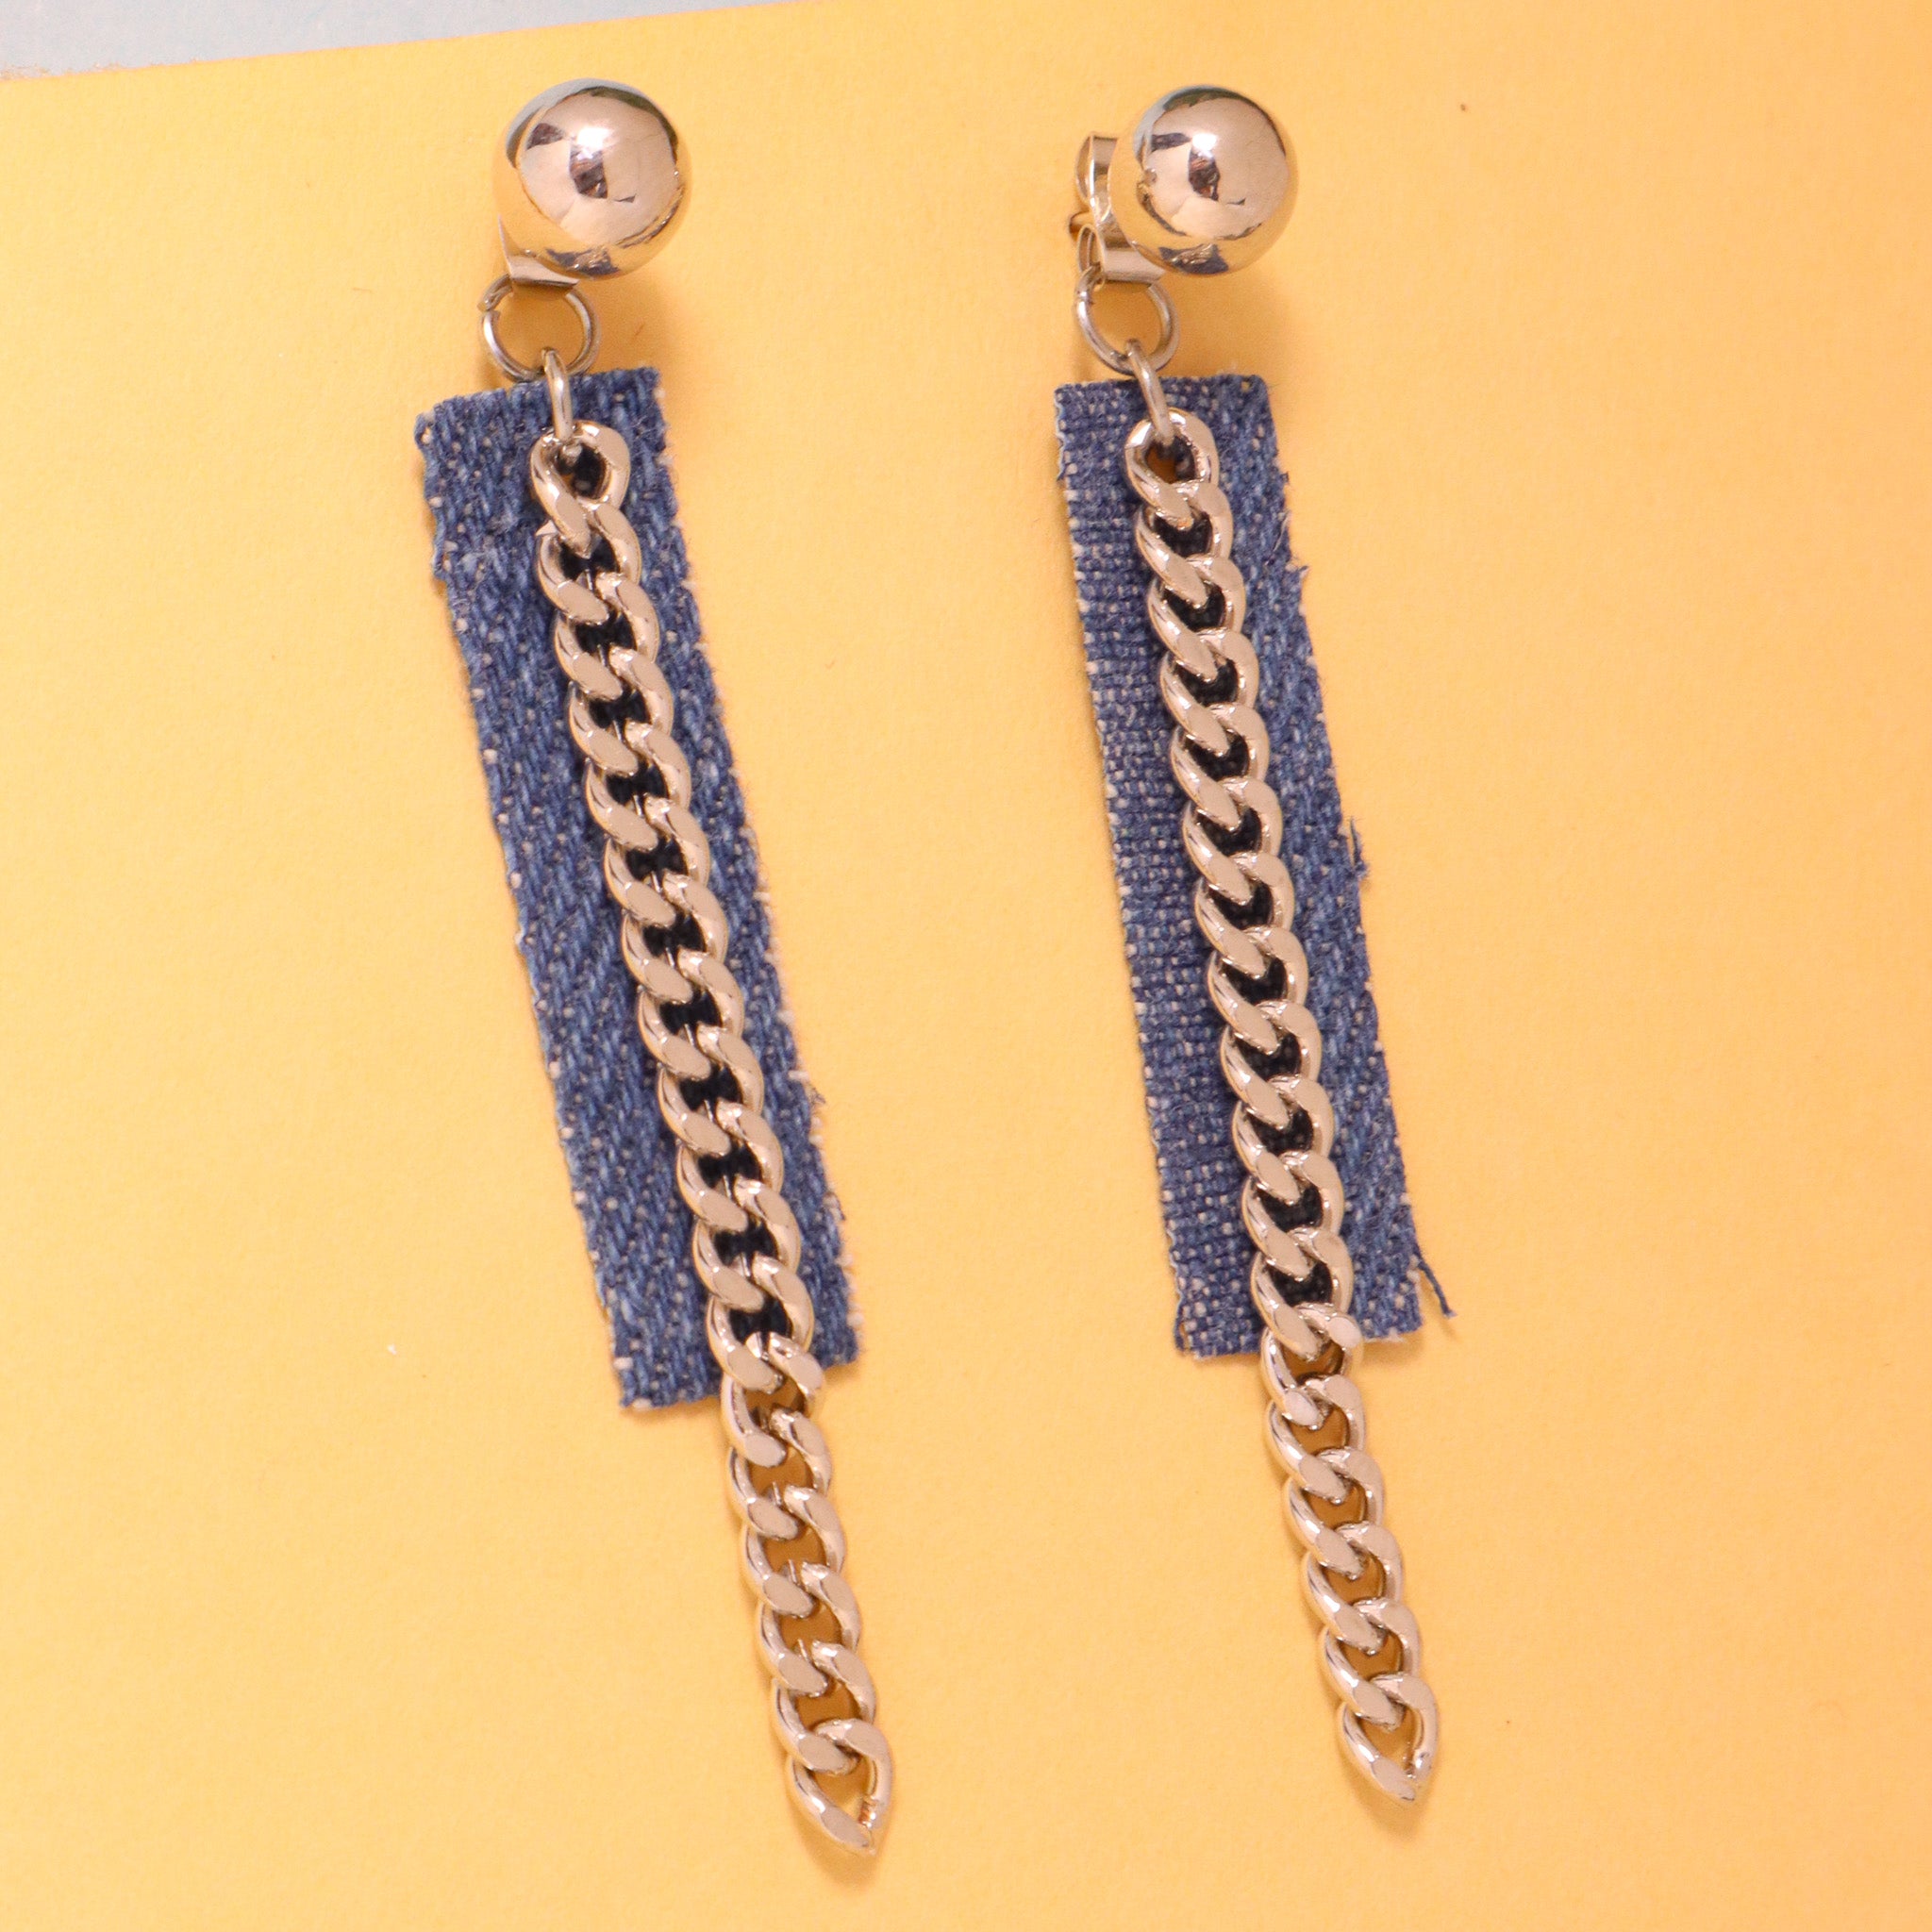 Aggregate more than 197 denim tassel earrings